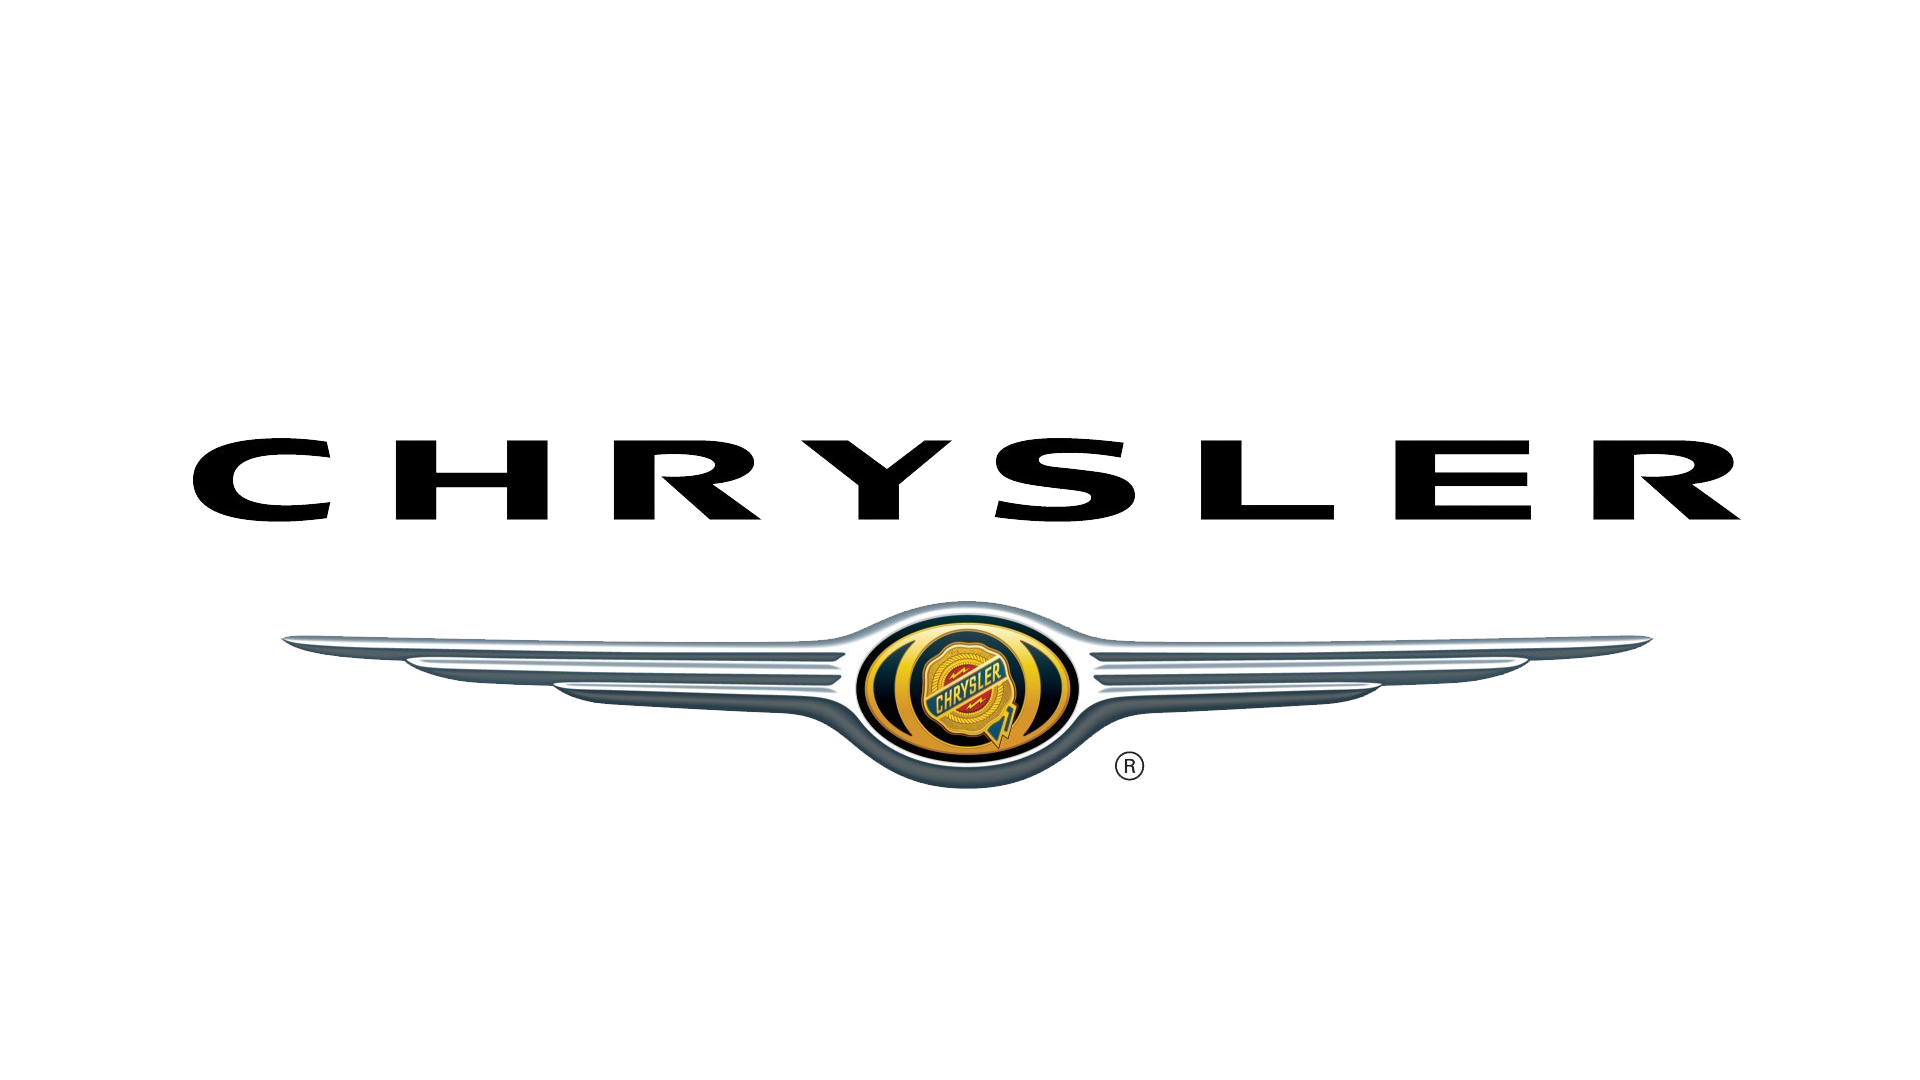 Chrysler Emblem Pictures - KibrisPDR